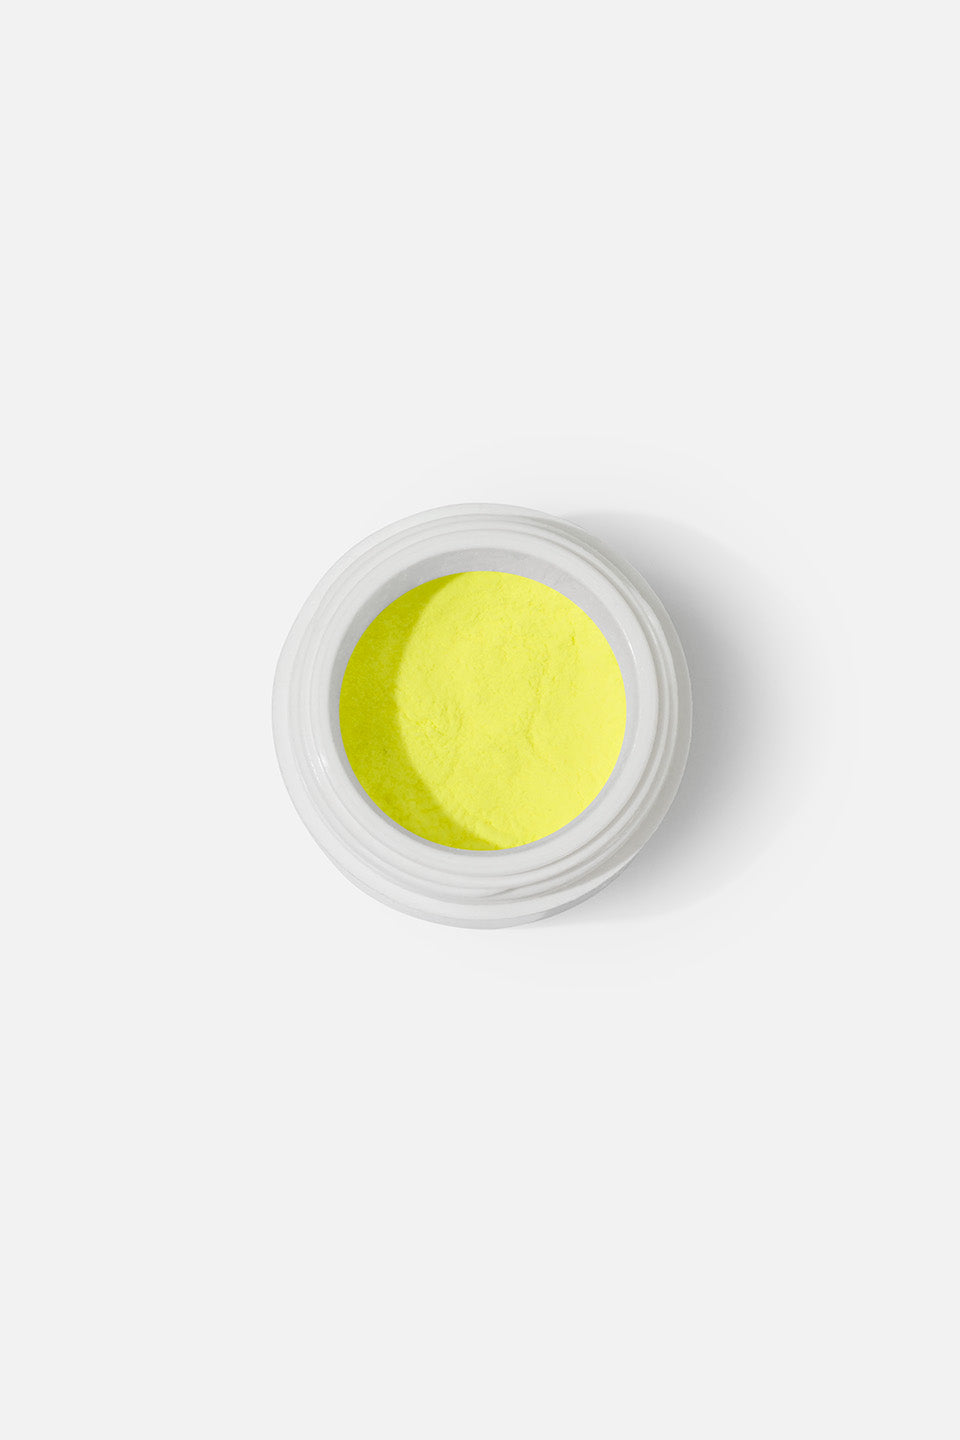 Polvo acrílico amarillo neon 5 g